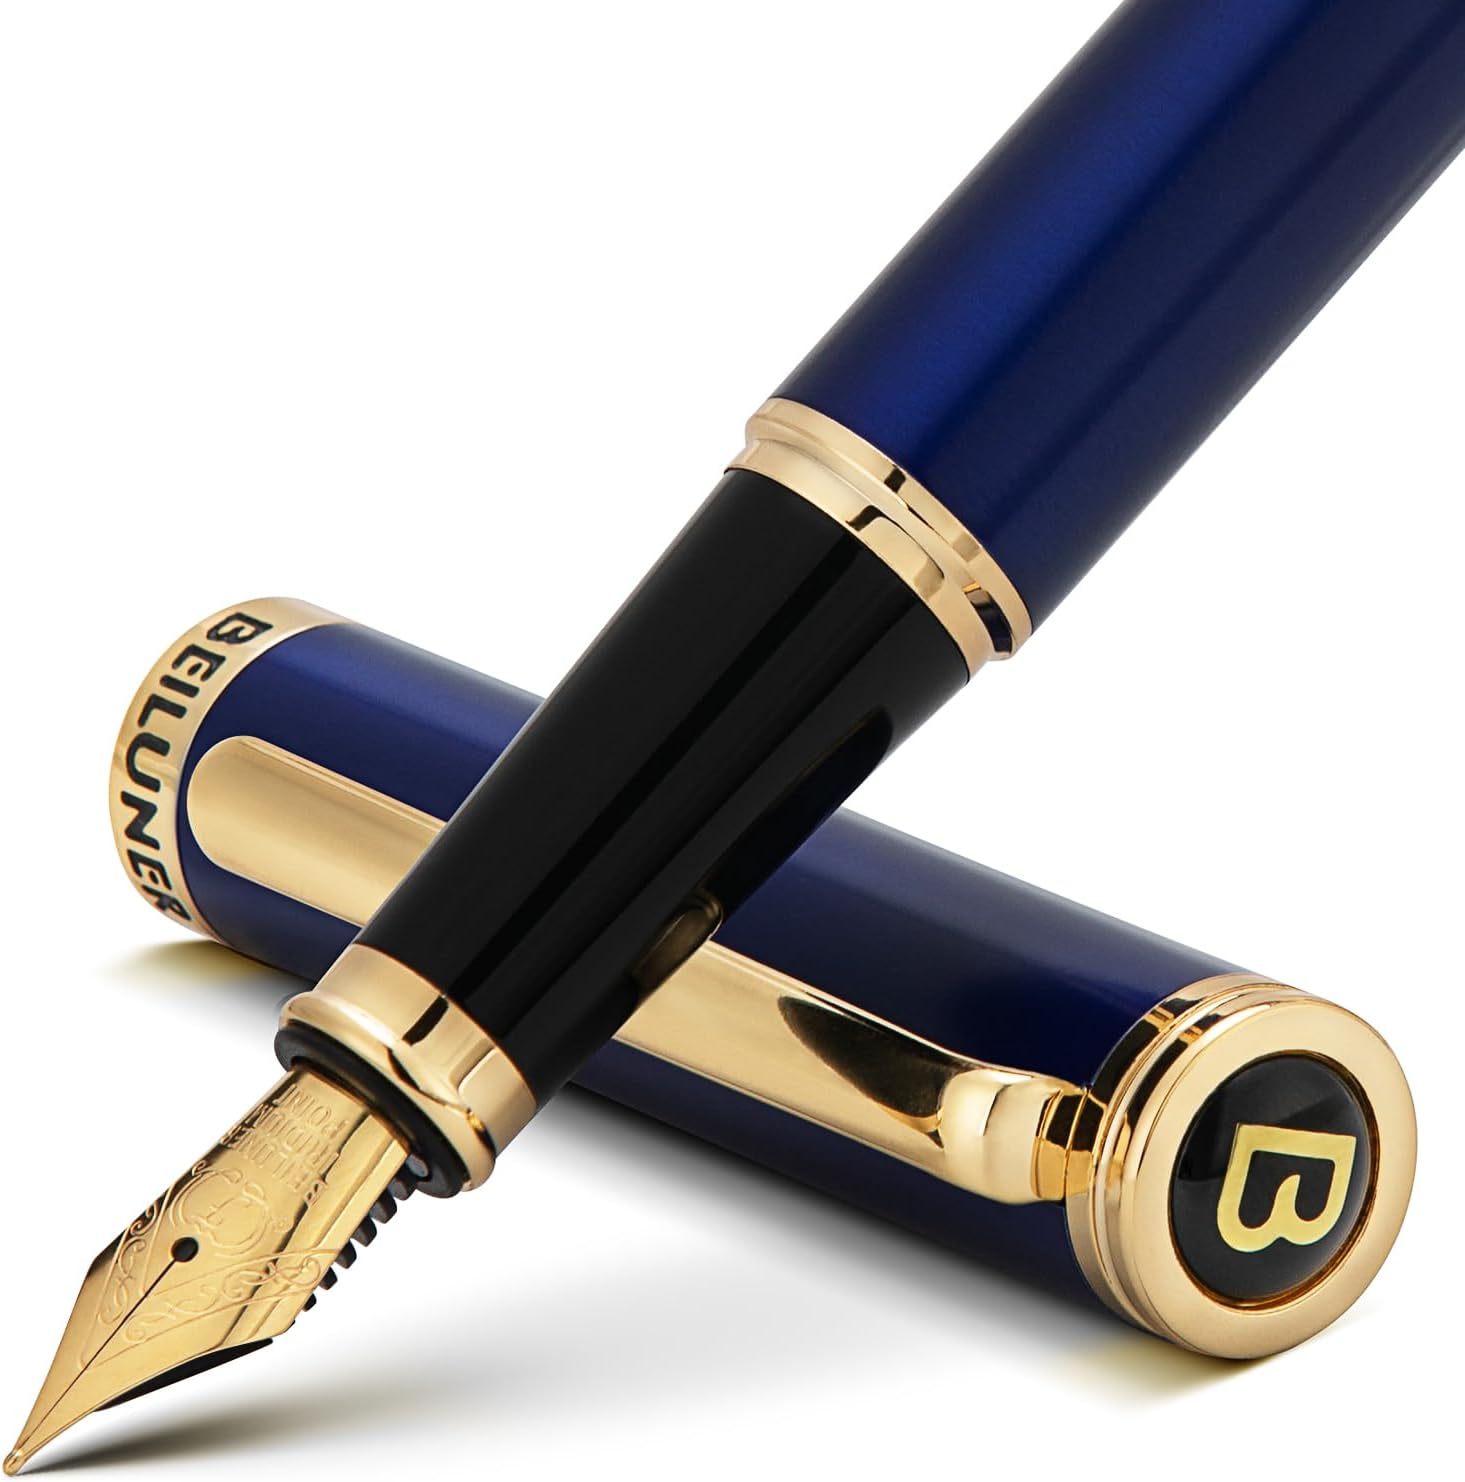 BEILUNER Blue Fountain Pen,Stunning Luxury Pen